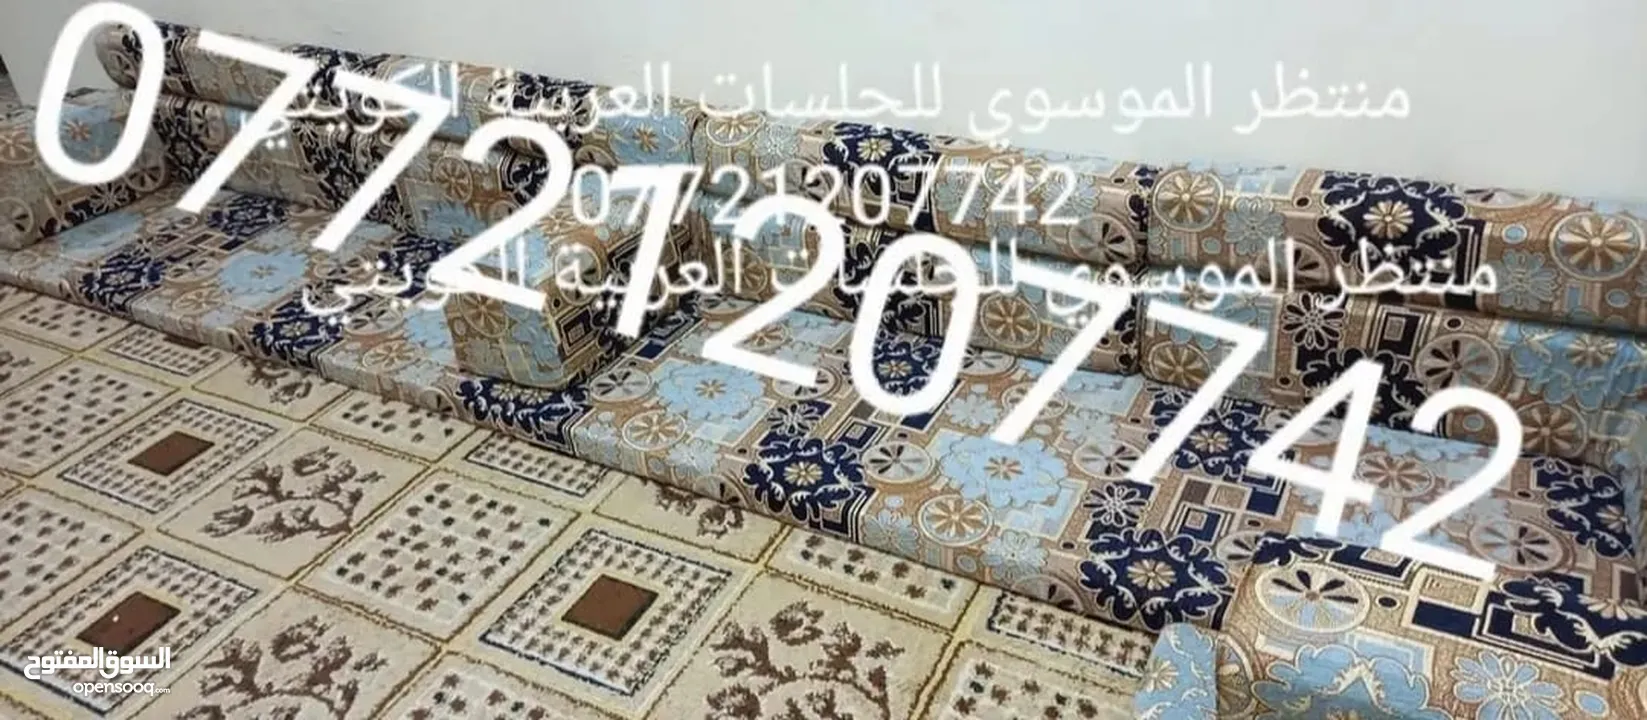 لشهر محرم تم تخفيض السعر الزبائن الكرام ..  .. .. كعدة عربية كويتي جديد ارتفاع ضهر 50سم  منادر 12 م